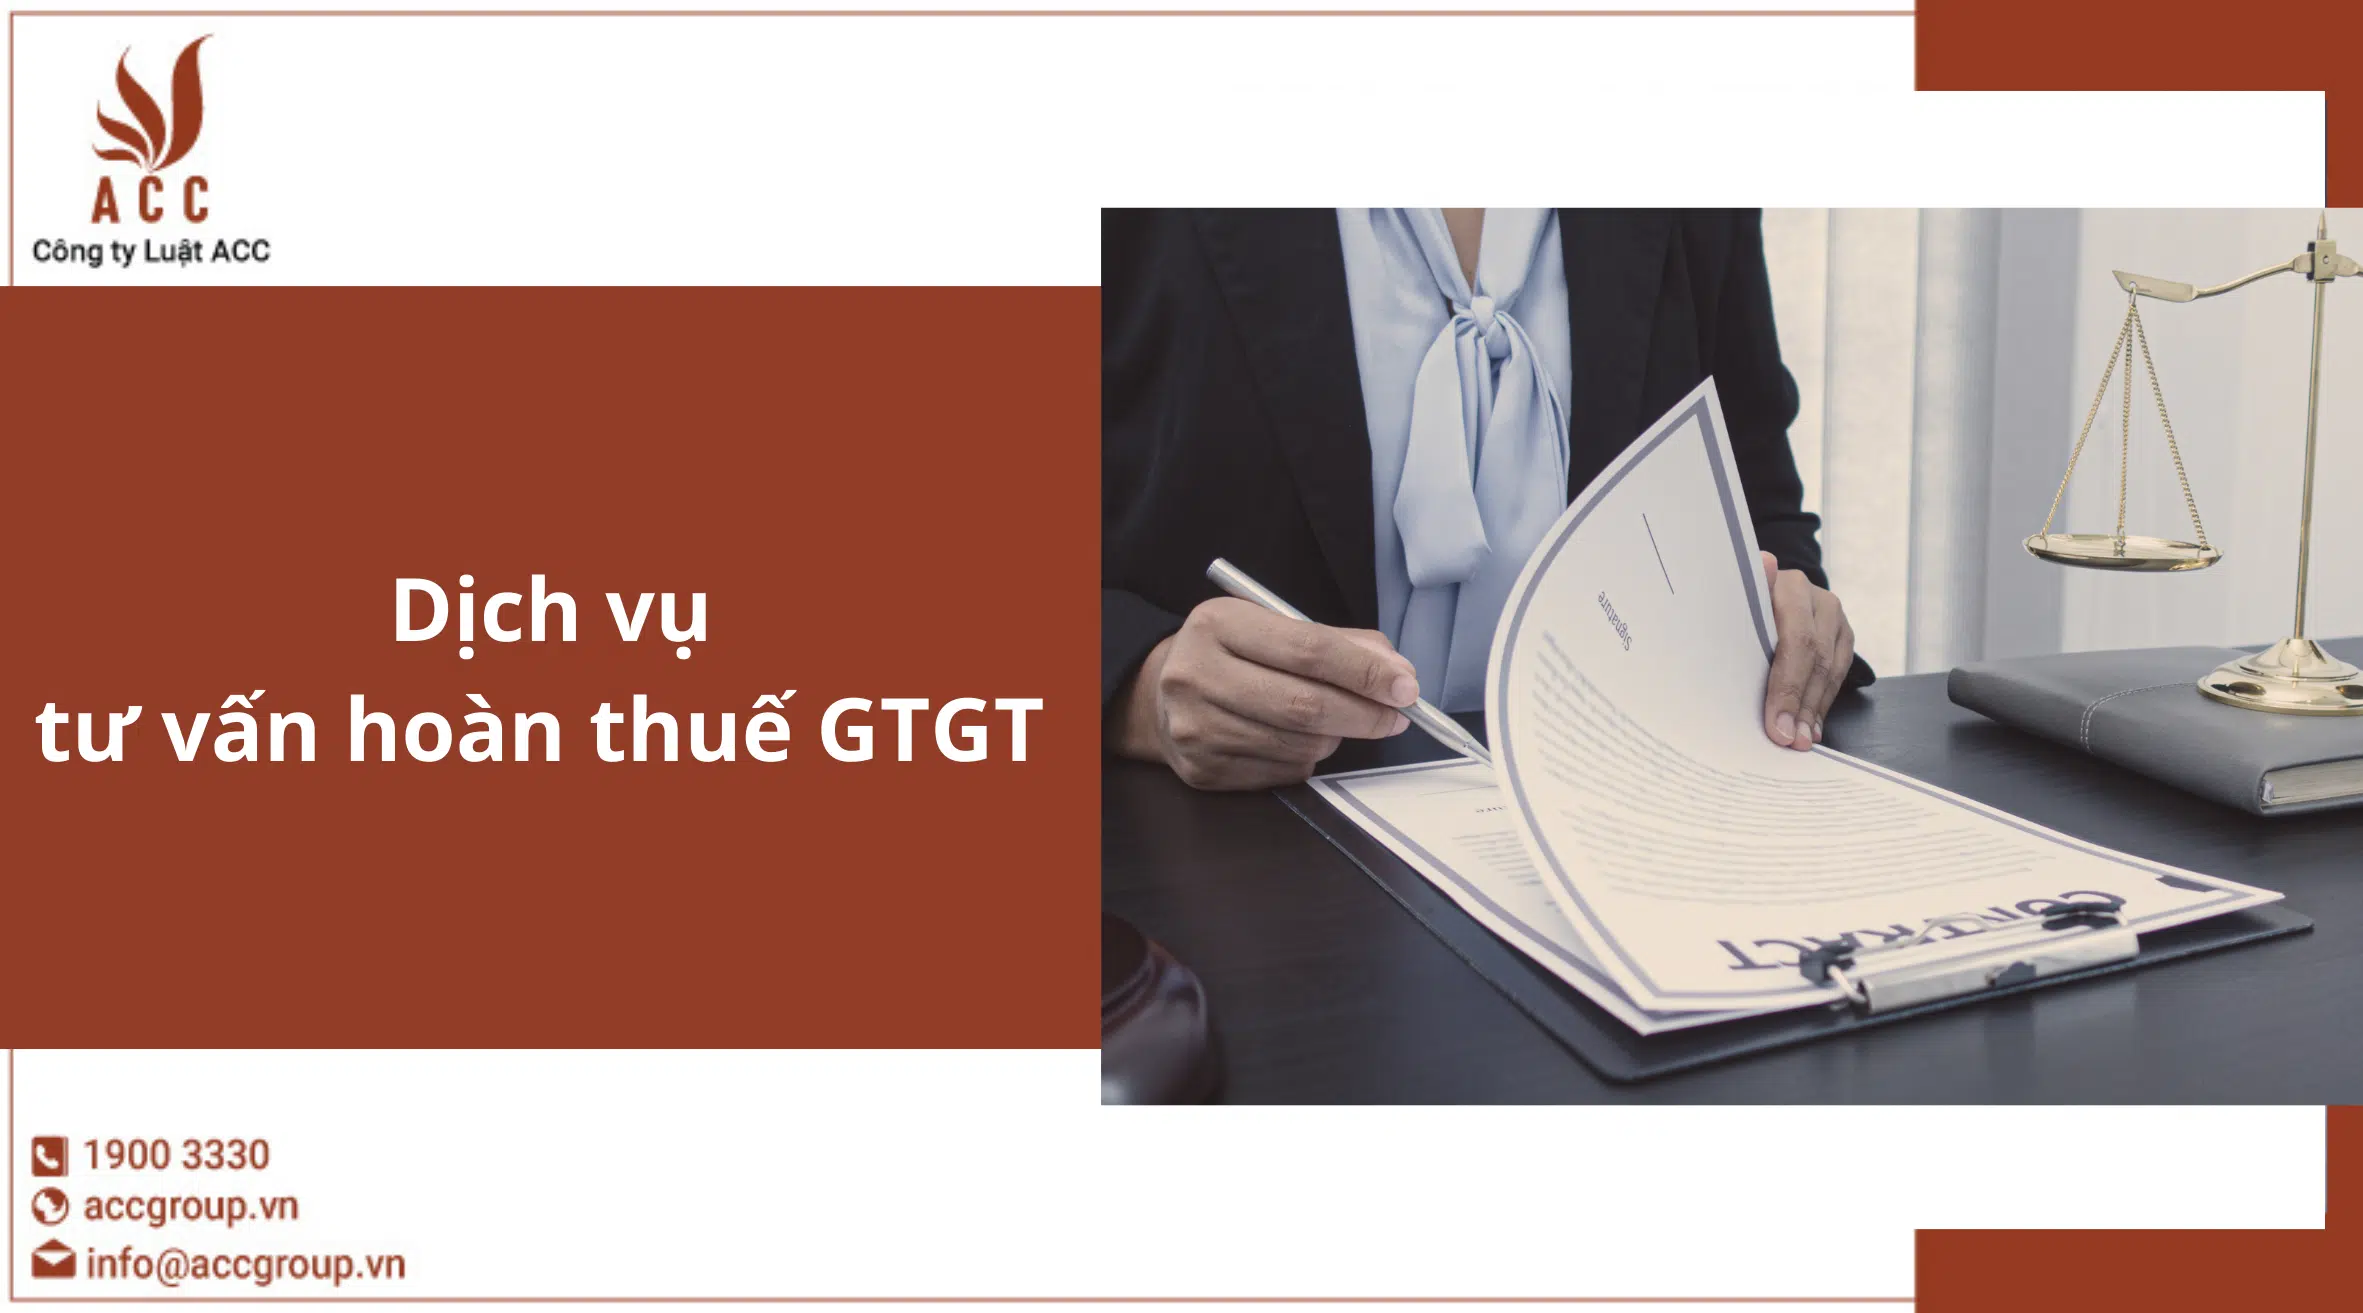 Dịch vụ tư vấn hoàn thuế GTGT 